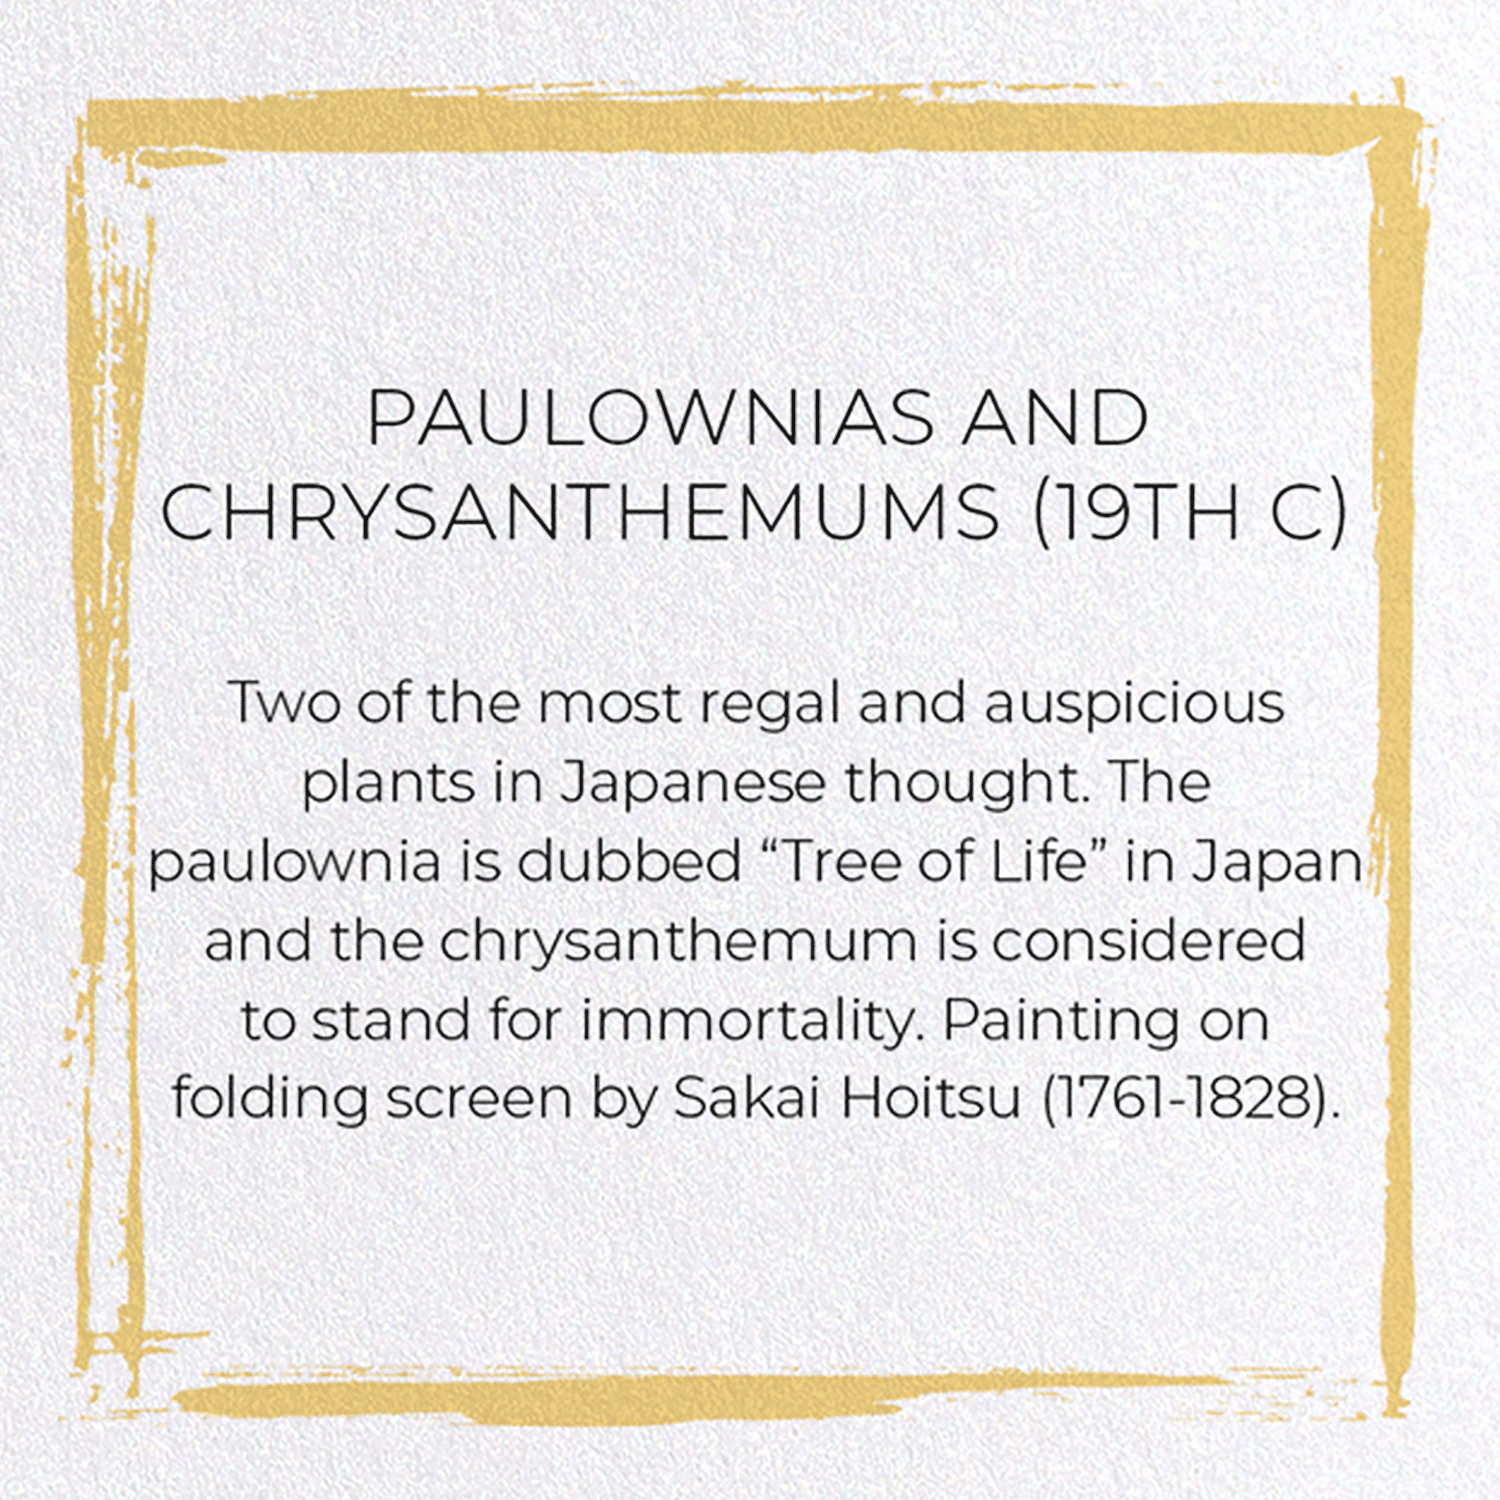 PAULOWNIAS AND CHRYSANTHEMUMS (19TH C)